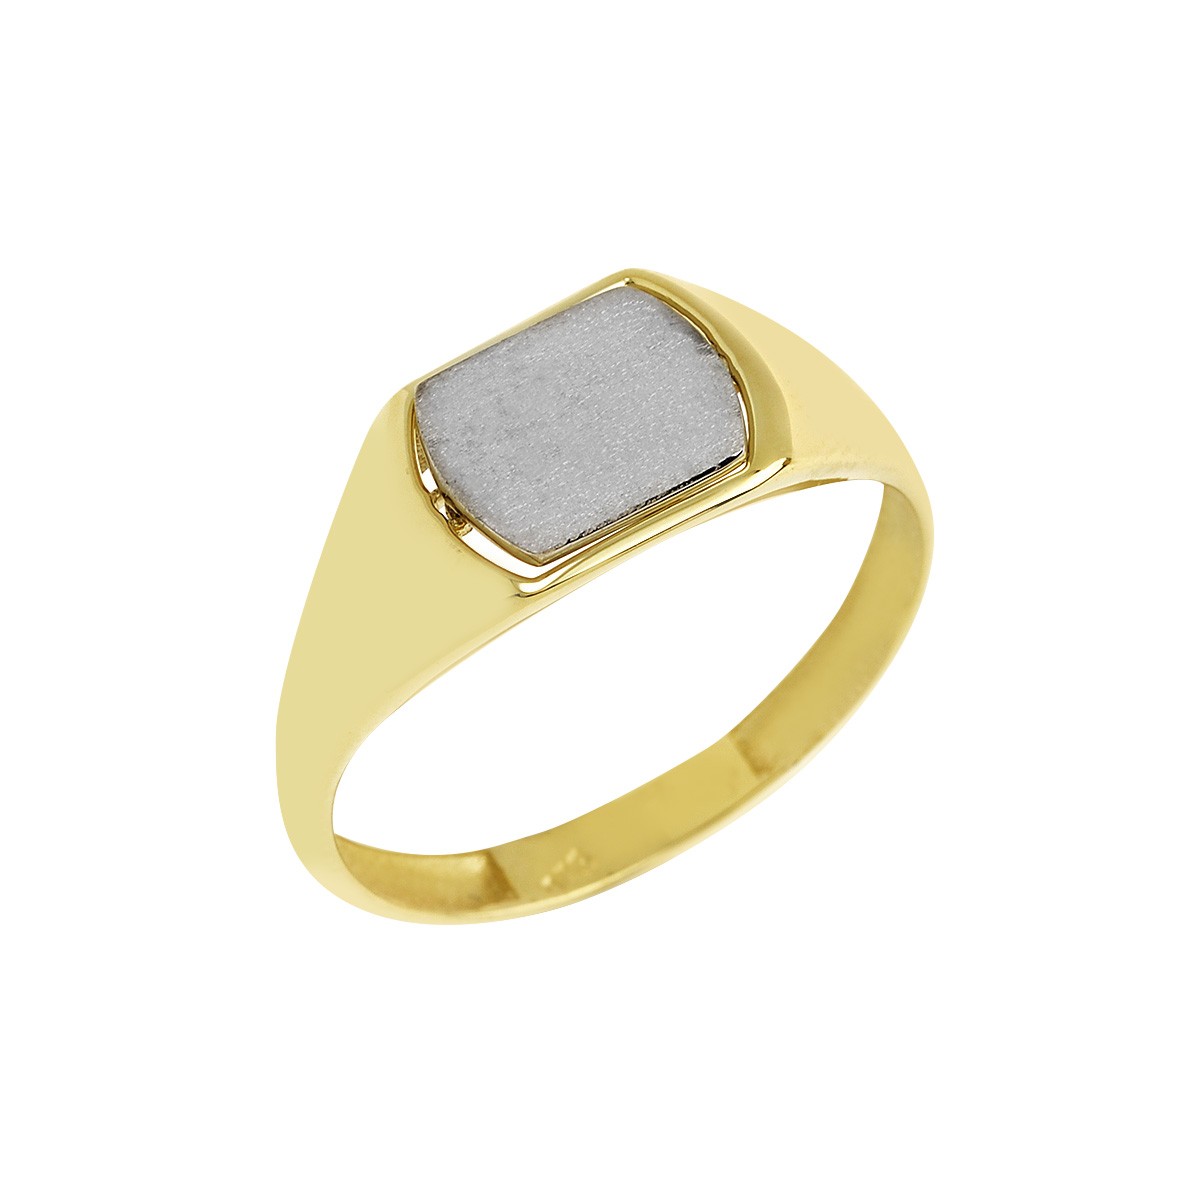 Δακτυλίδι Ανδρικό Χρυσό Κ9 με Πλάκα Κωδ: 401153